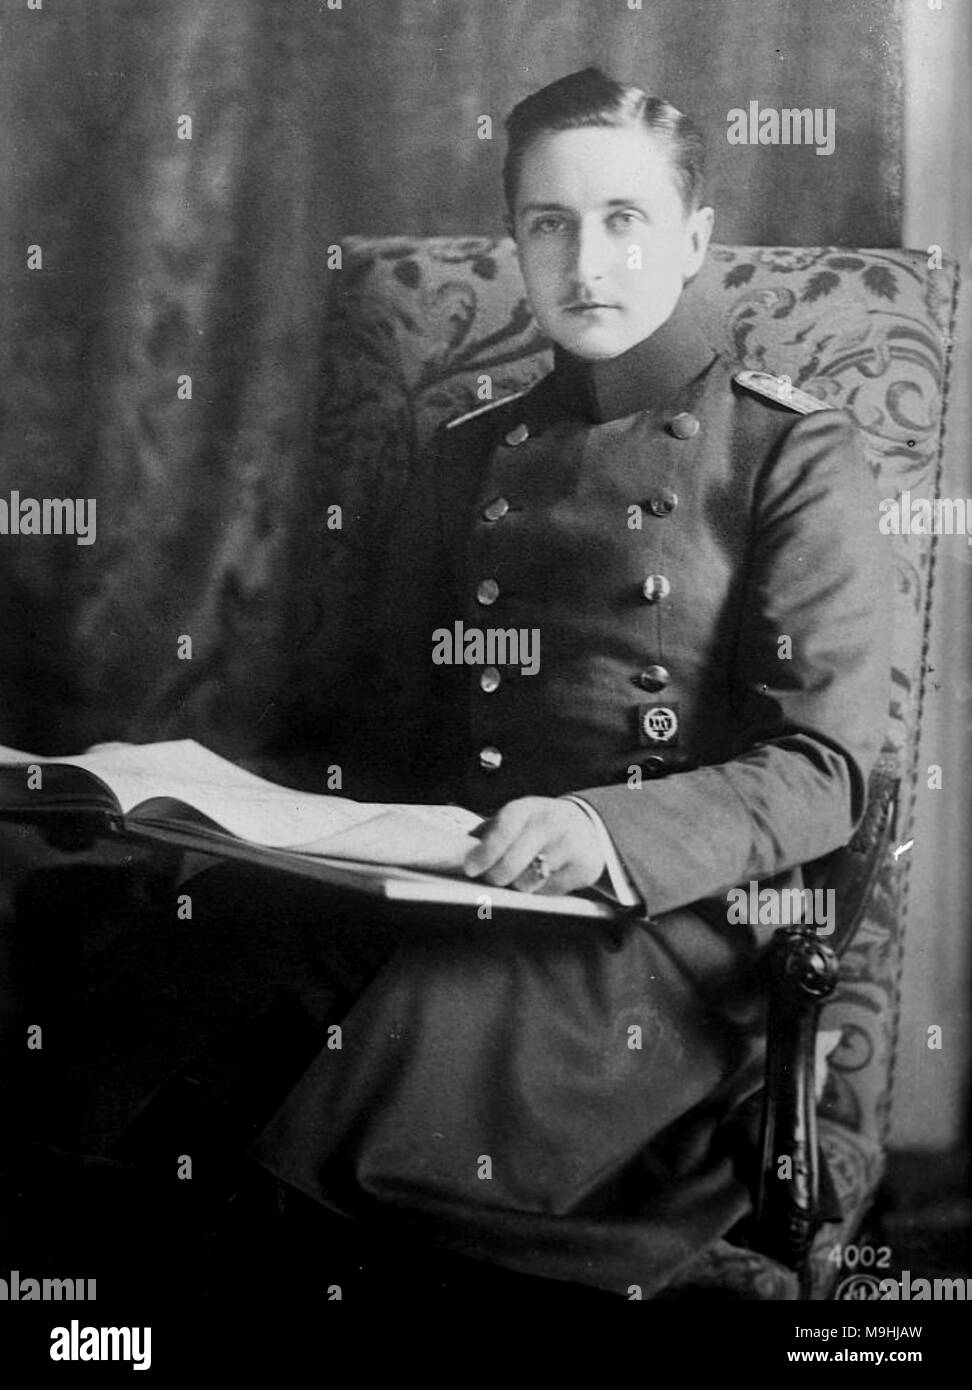 El príncipe August Wilhelm de Prusia, Príncipe August Wilhelm Heinrich Günther Viktor de Prusia (1887 - 1949), llamado 'Auwi', fue el cuarto hijo del emperador Guillermo II, emperador de Alemania por su primera esposa, Augusta Victoria de Schleswig-Holstein. Foto de stock